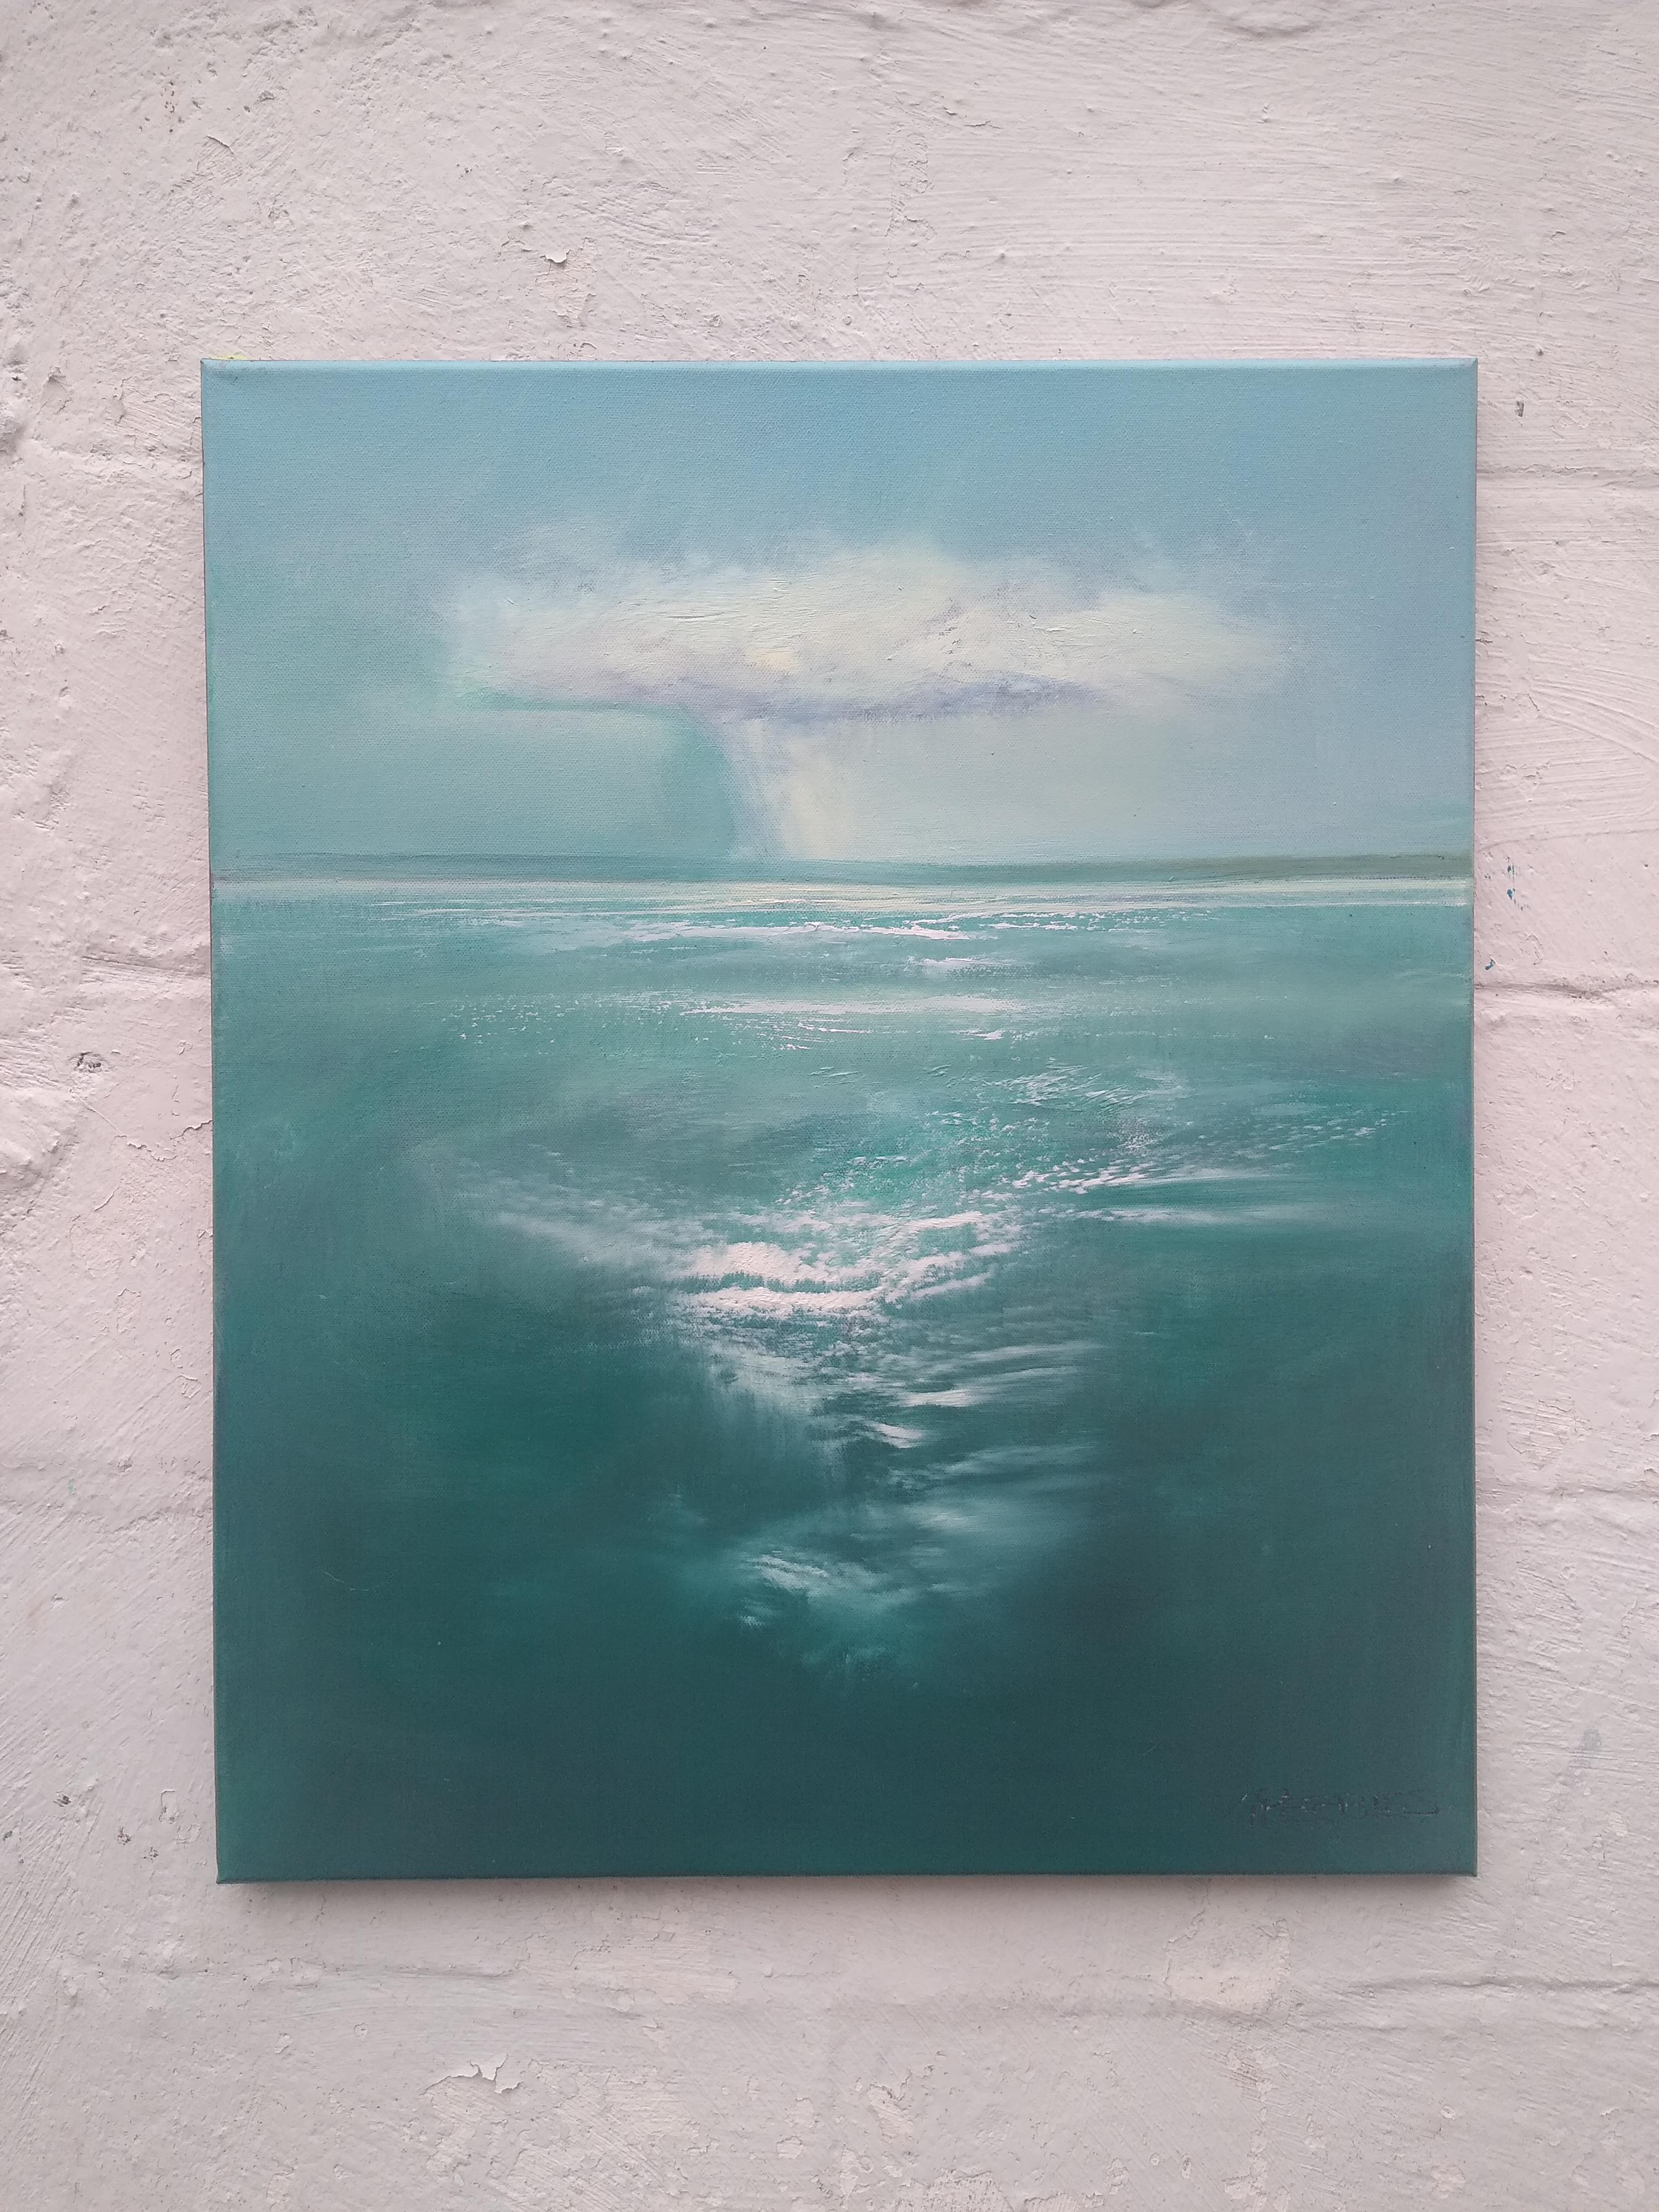 <p>Kommentare des Künstlers<br>Eine zarte Wolke schlängelt sich in der ätherischen Meereslandschaft von George Peebles sanft am Horizont entlang. In einem seltenen Moment der Ruhe zeigt er einen eindrucksvollen Blick auf den majestätischen Ozean.